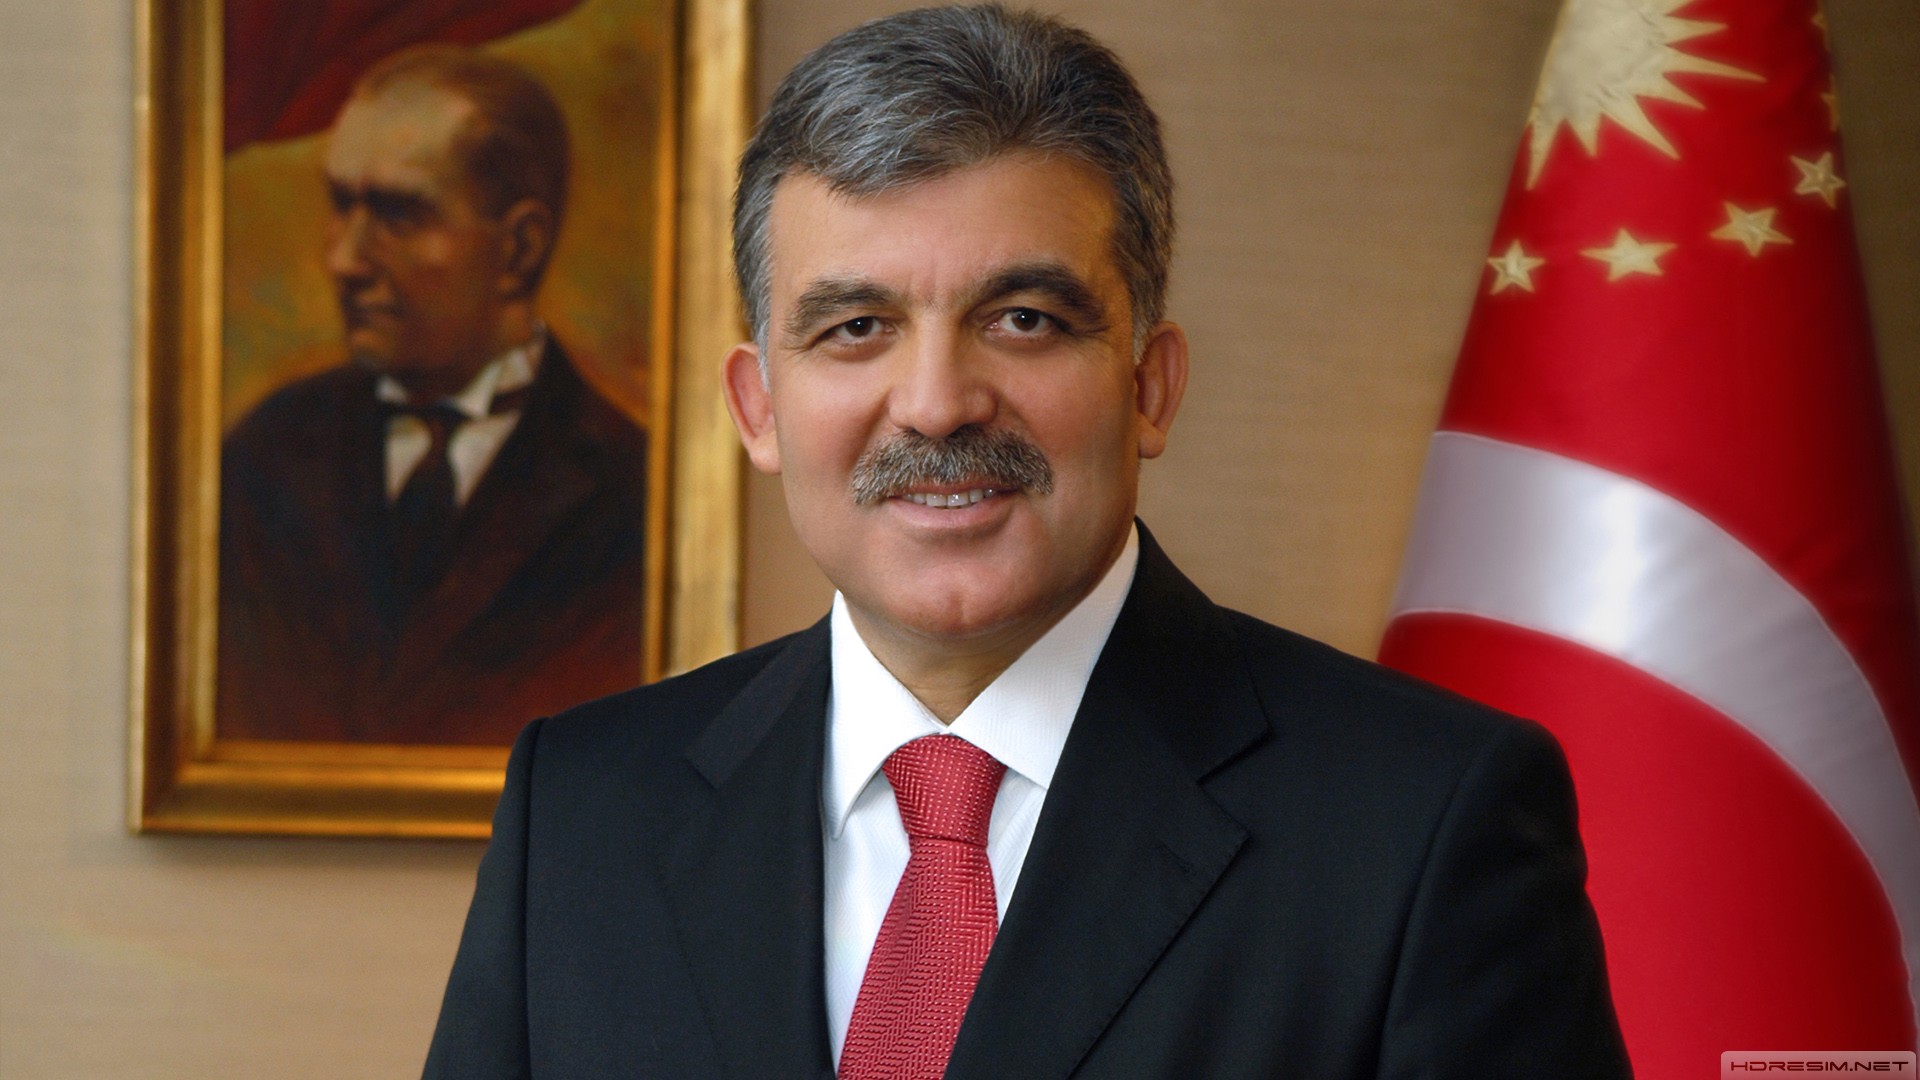 Абдулла гюль. Абдулла Гюль (2007-2014);. Абдулла Гюль турецкий политик.